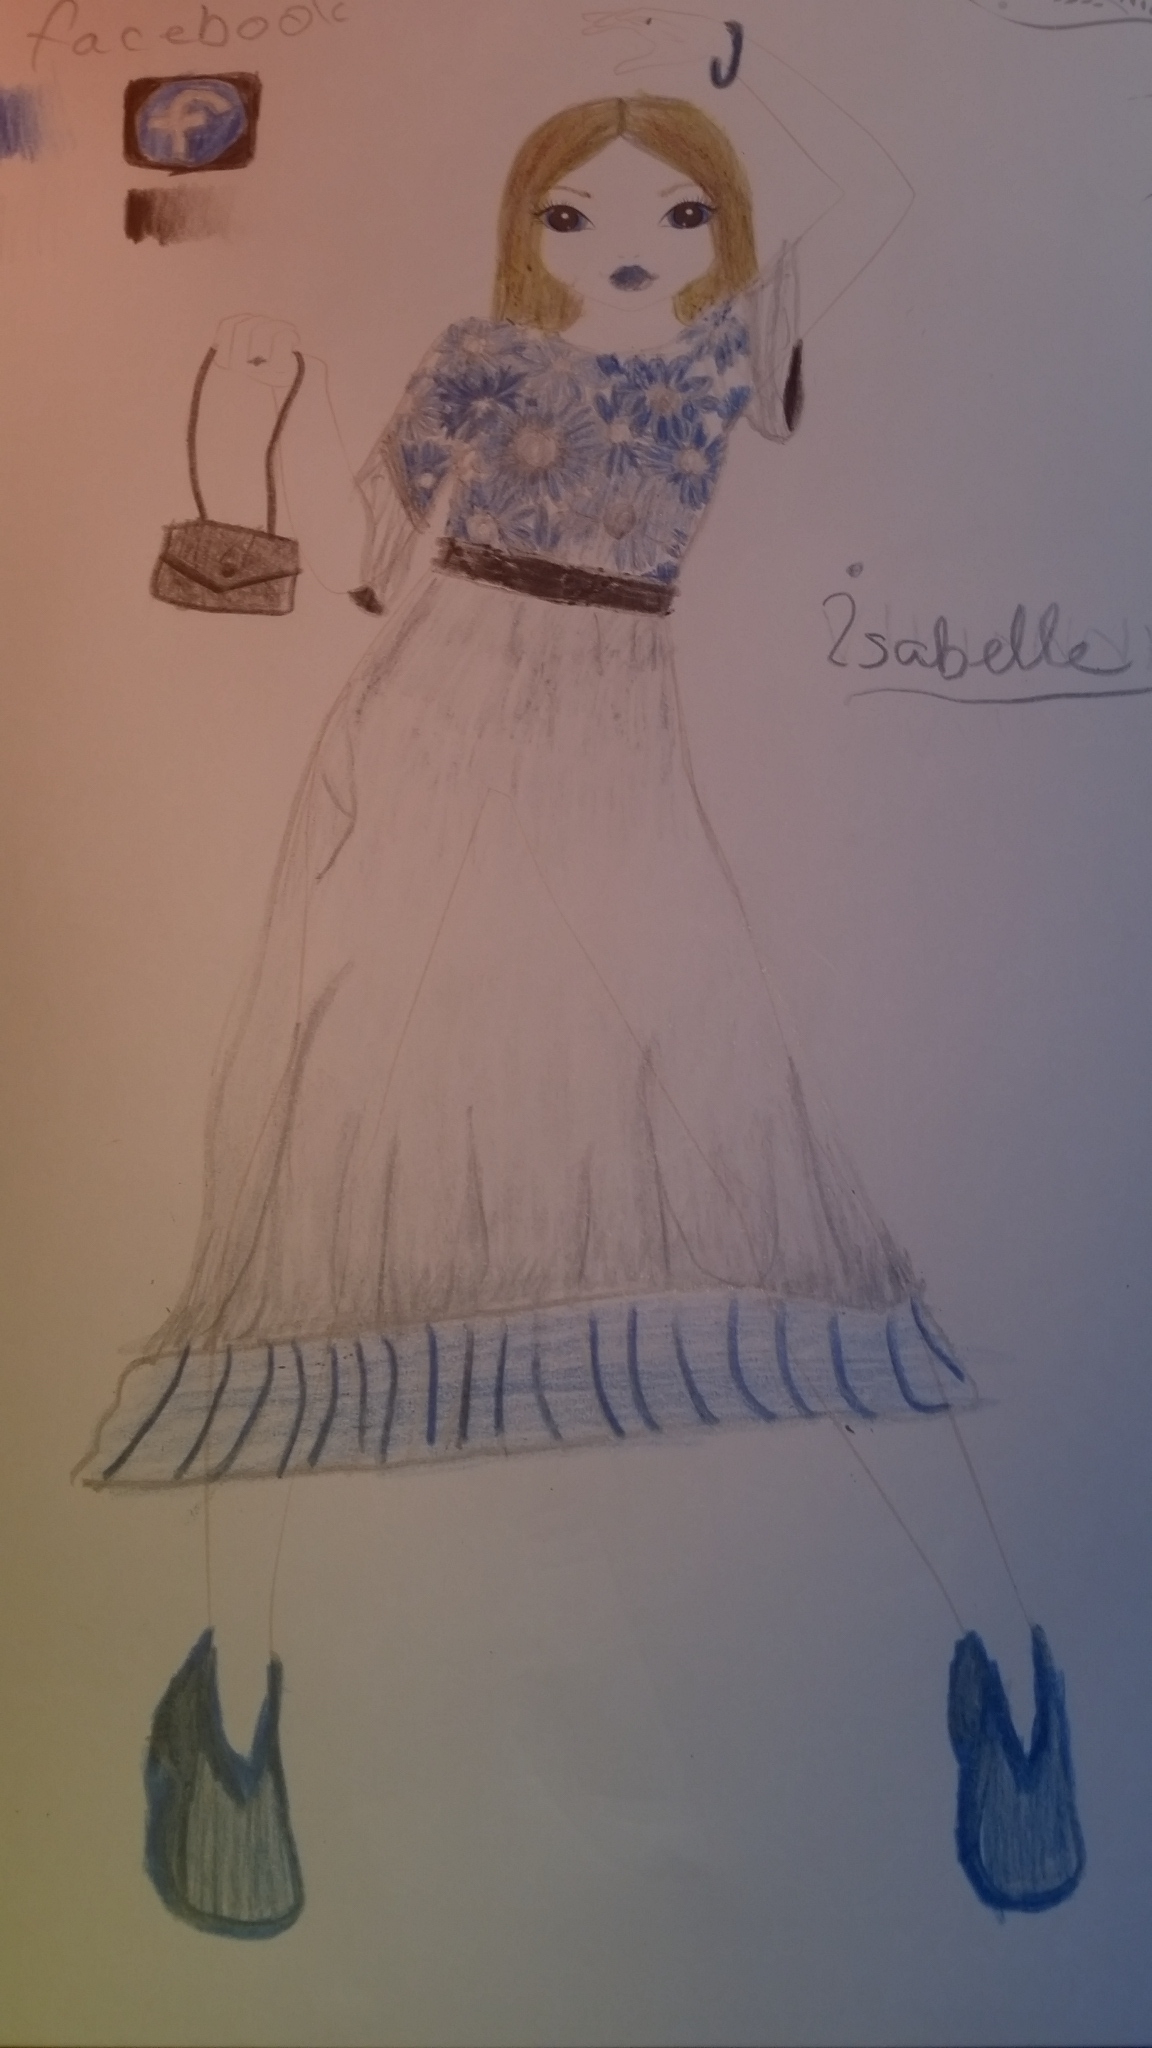 Isabelle  A., 9 Jahre, aus Schweiz,argau